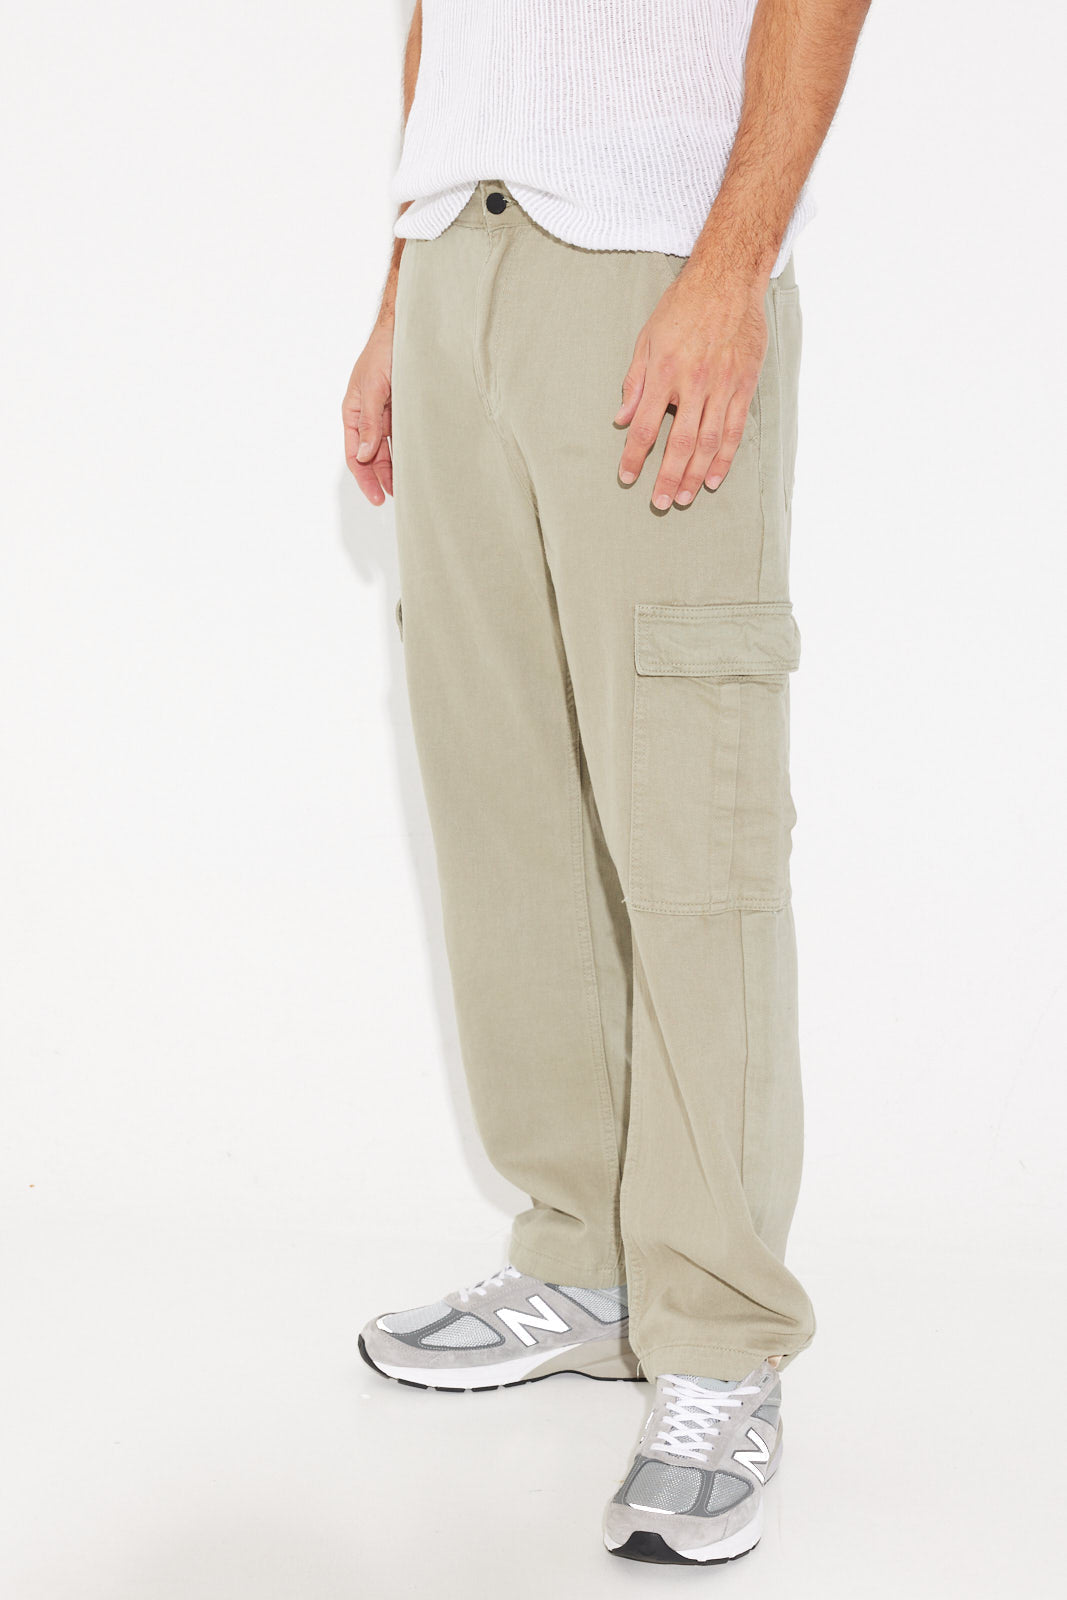 Wrangler Authentics Men's Premium Relaxed Fit Straight Leg Cargo Pant,  Anthracite Twill, 40W X 30L price in Dubai, UAE | Compare Prices